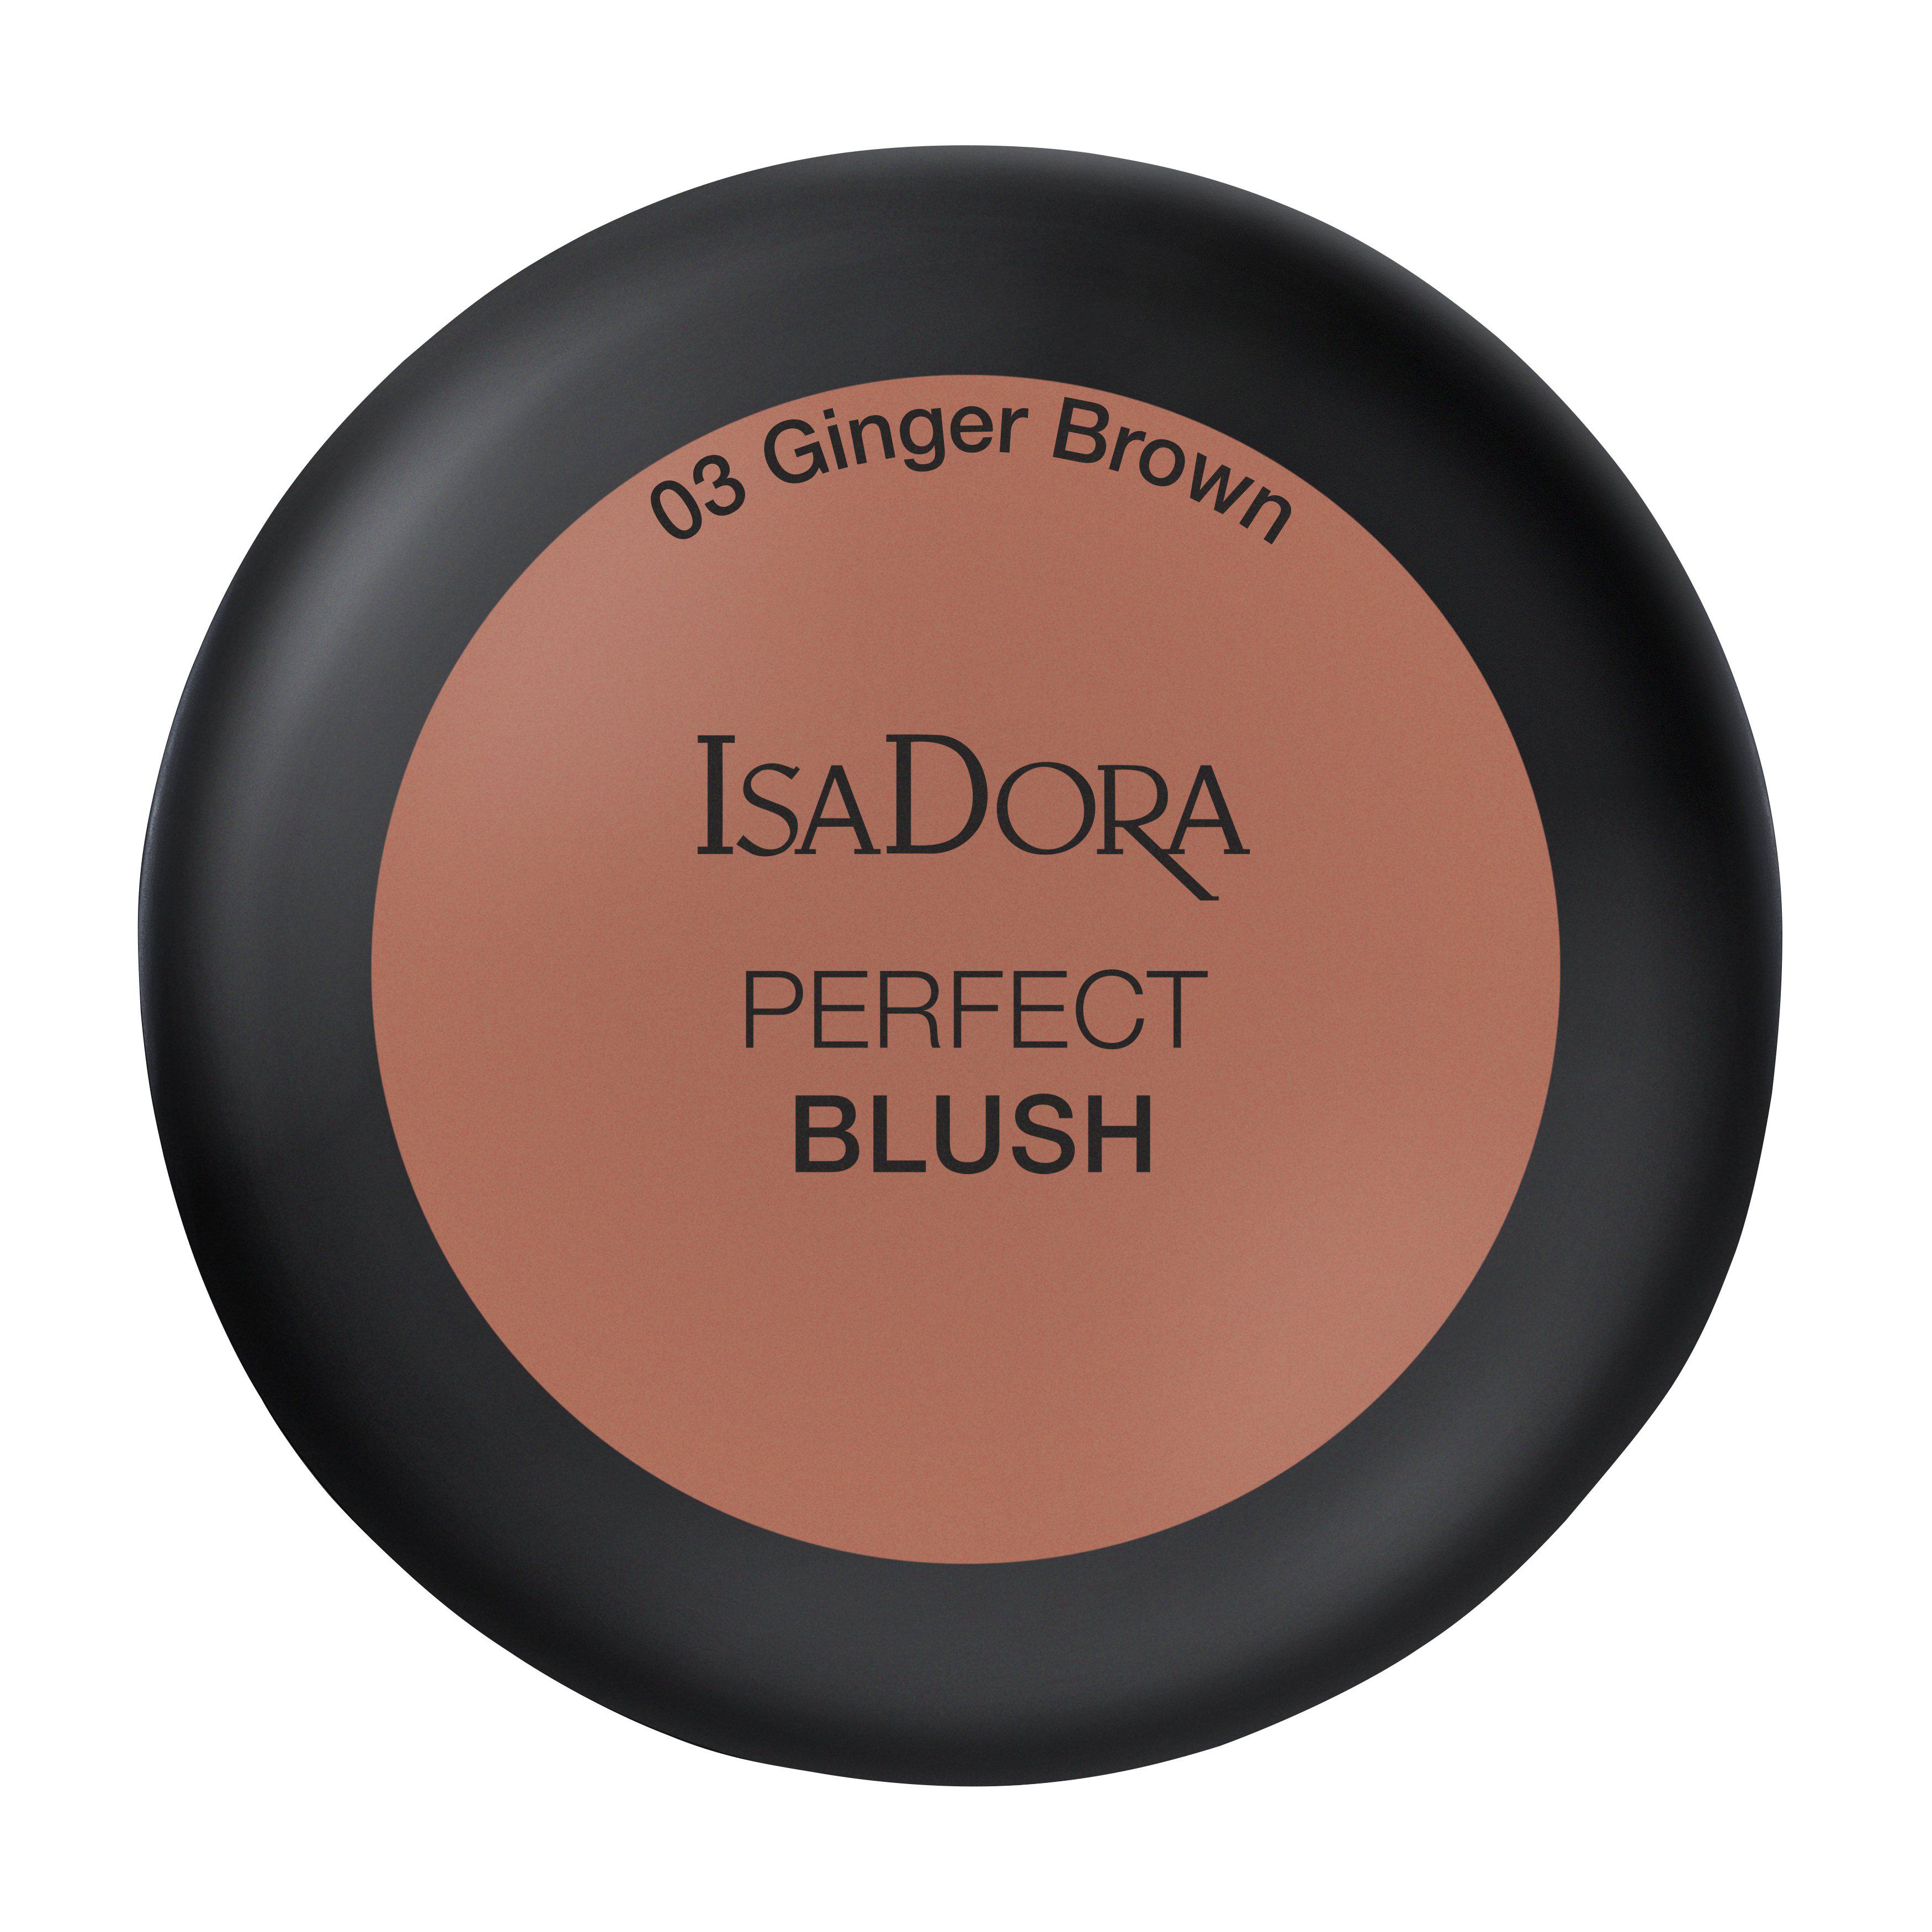 IsaDora Perfect Blush 03 Ginger Brown